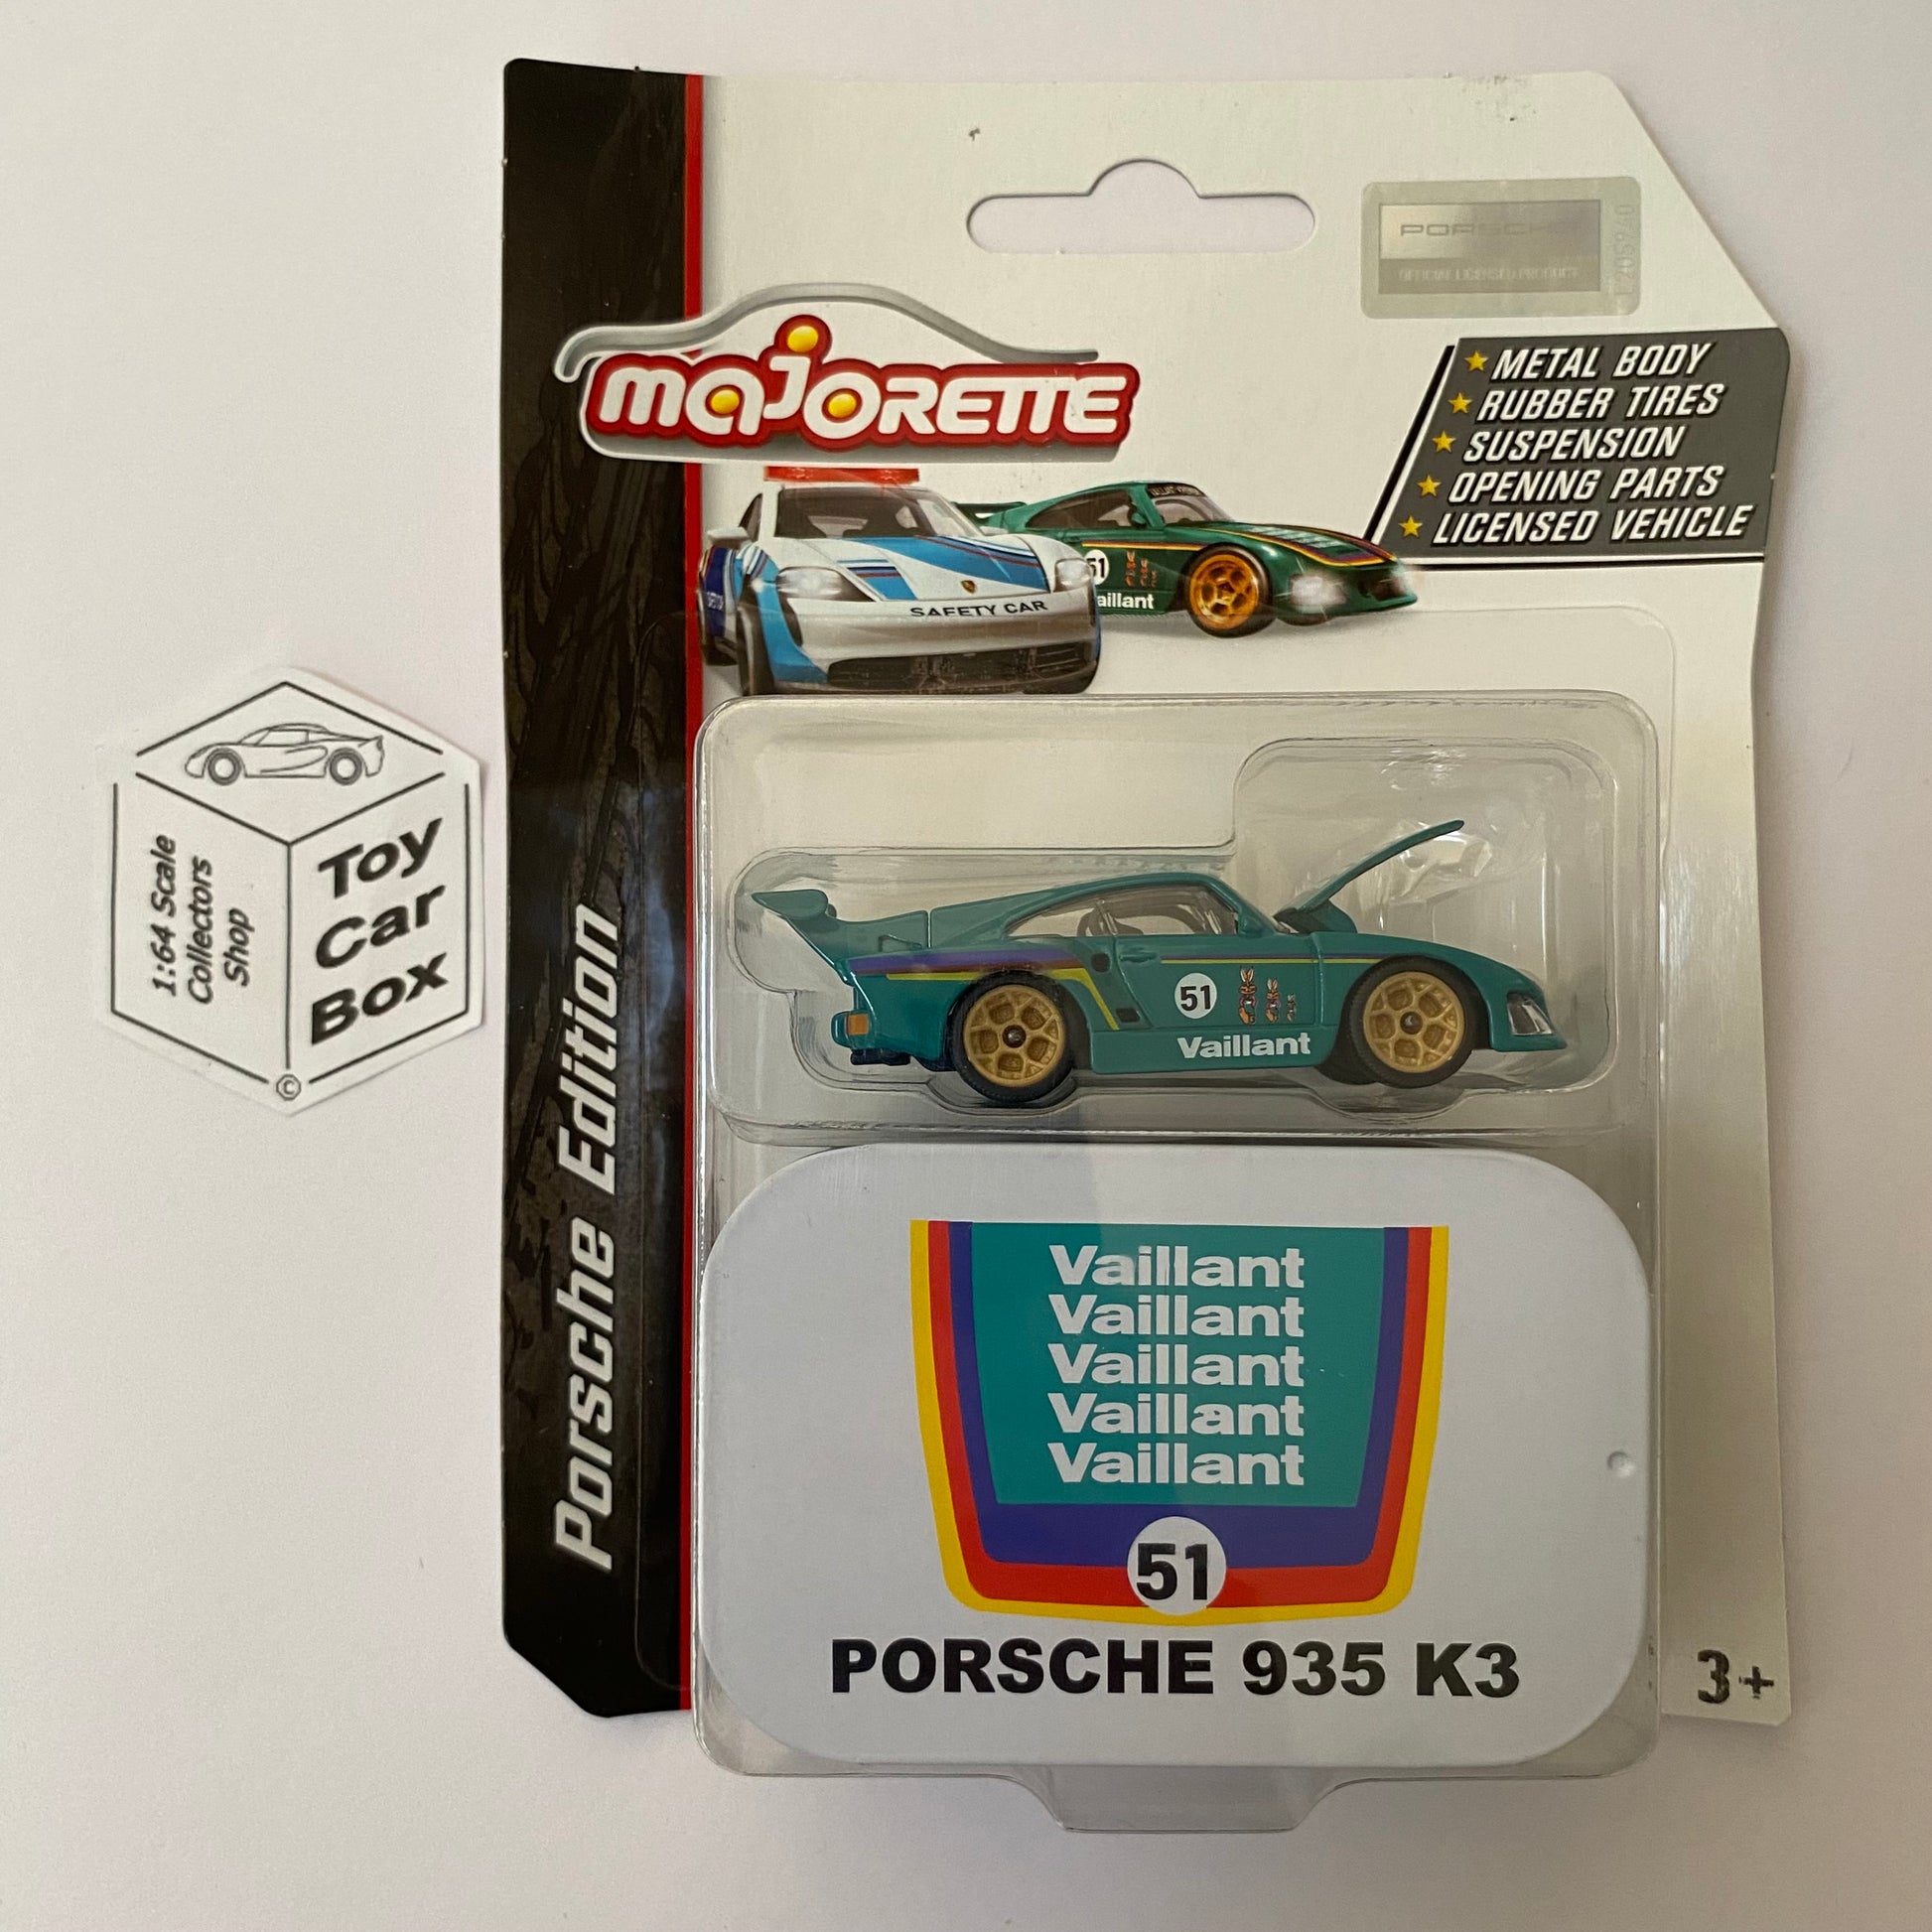 Majorette 1:64 5-Car Set Gift Pack Porsche Edition 2023 – Hot